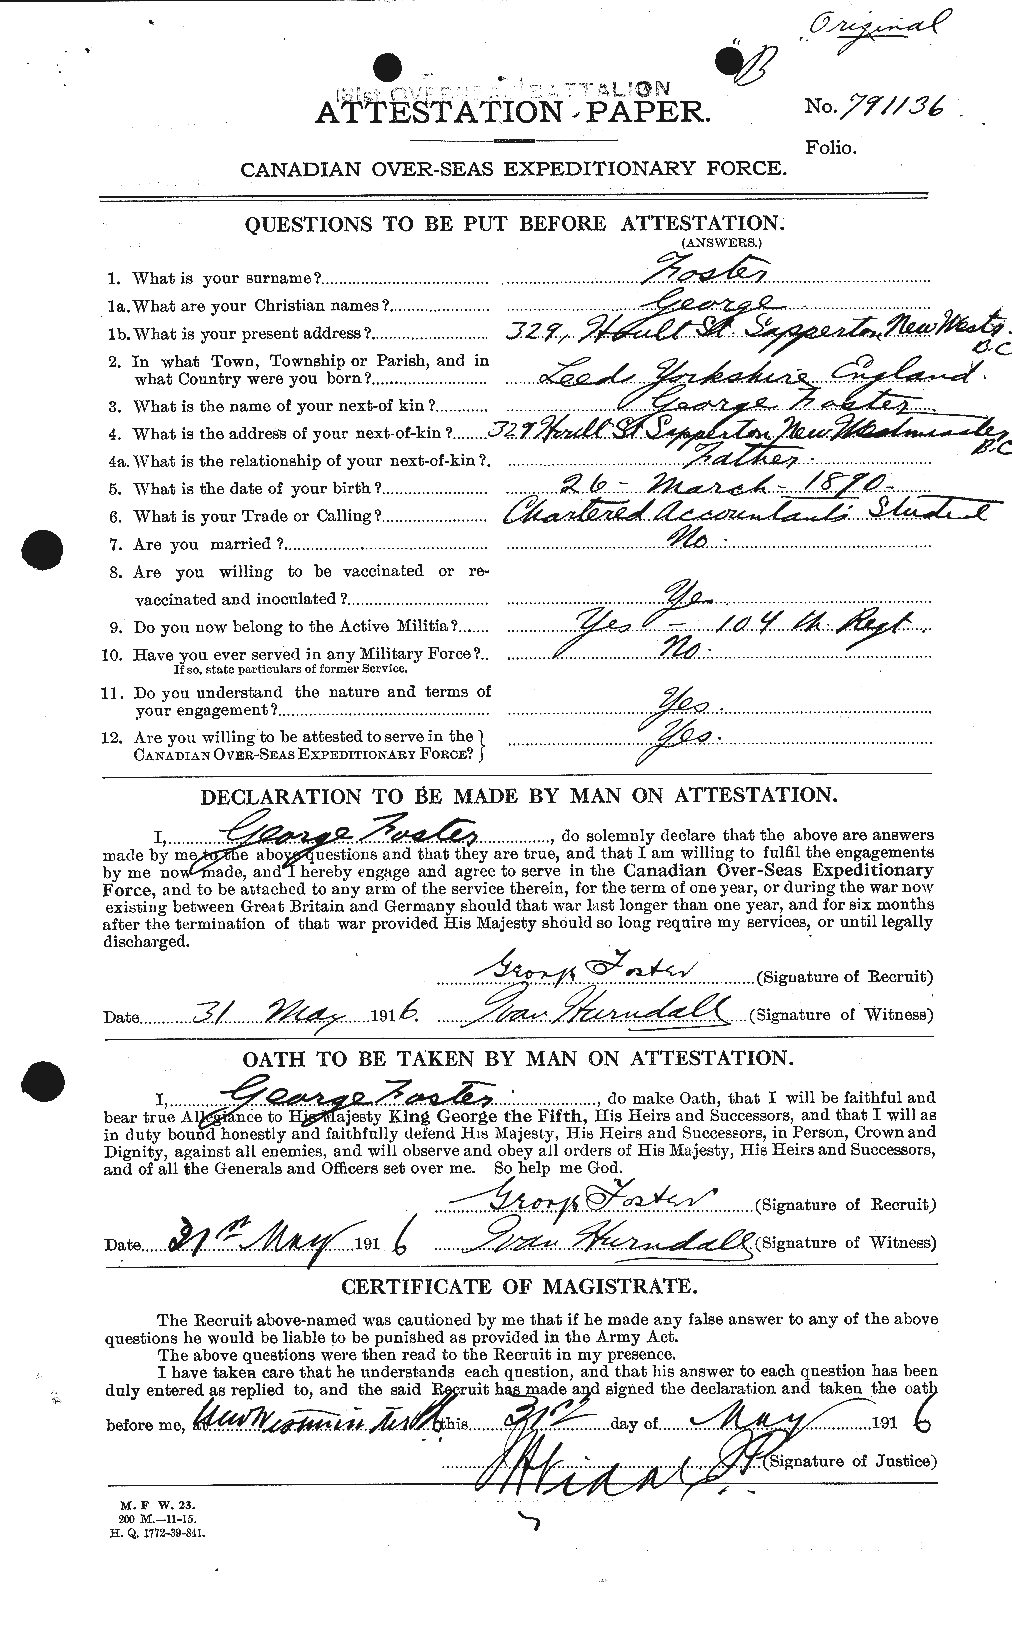 Dossiers du Personnel de la Première Guerre mondiale - CEC 330666a